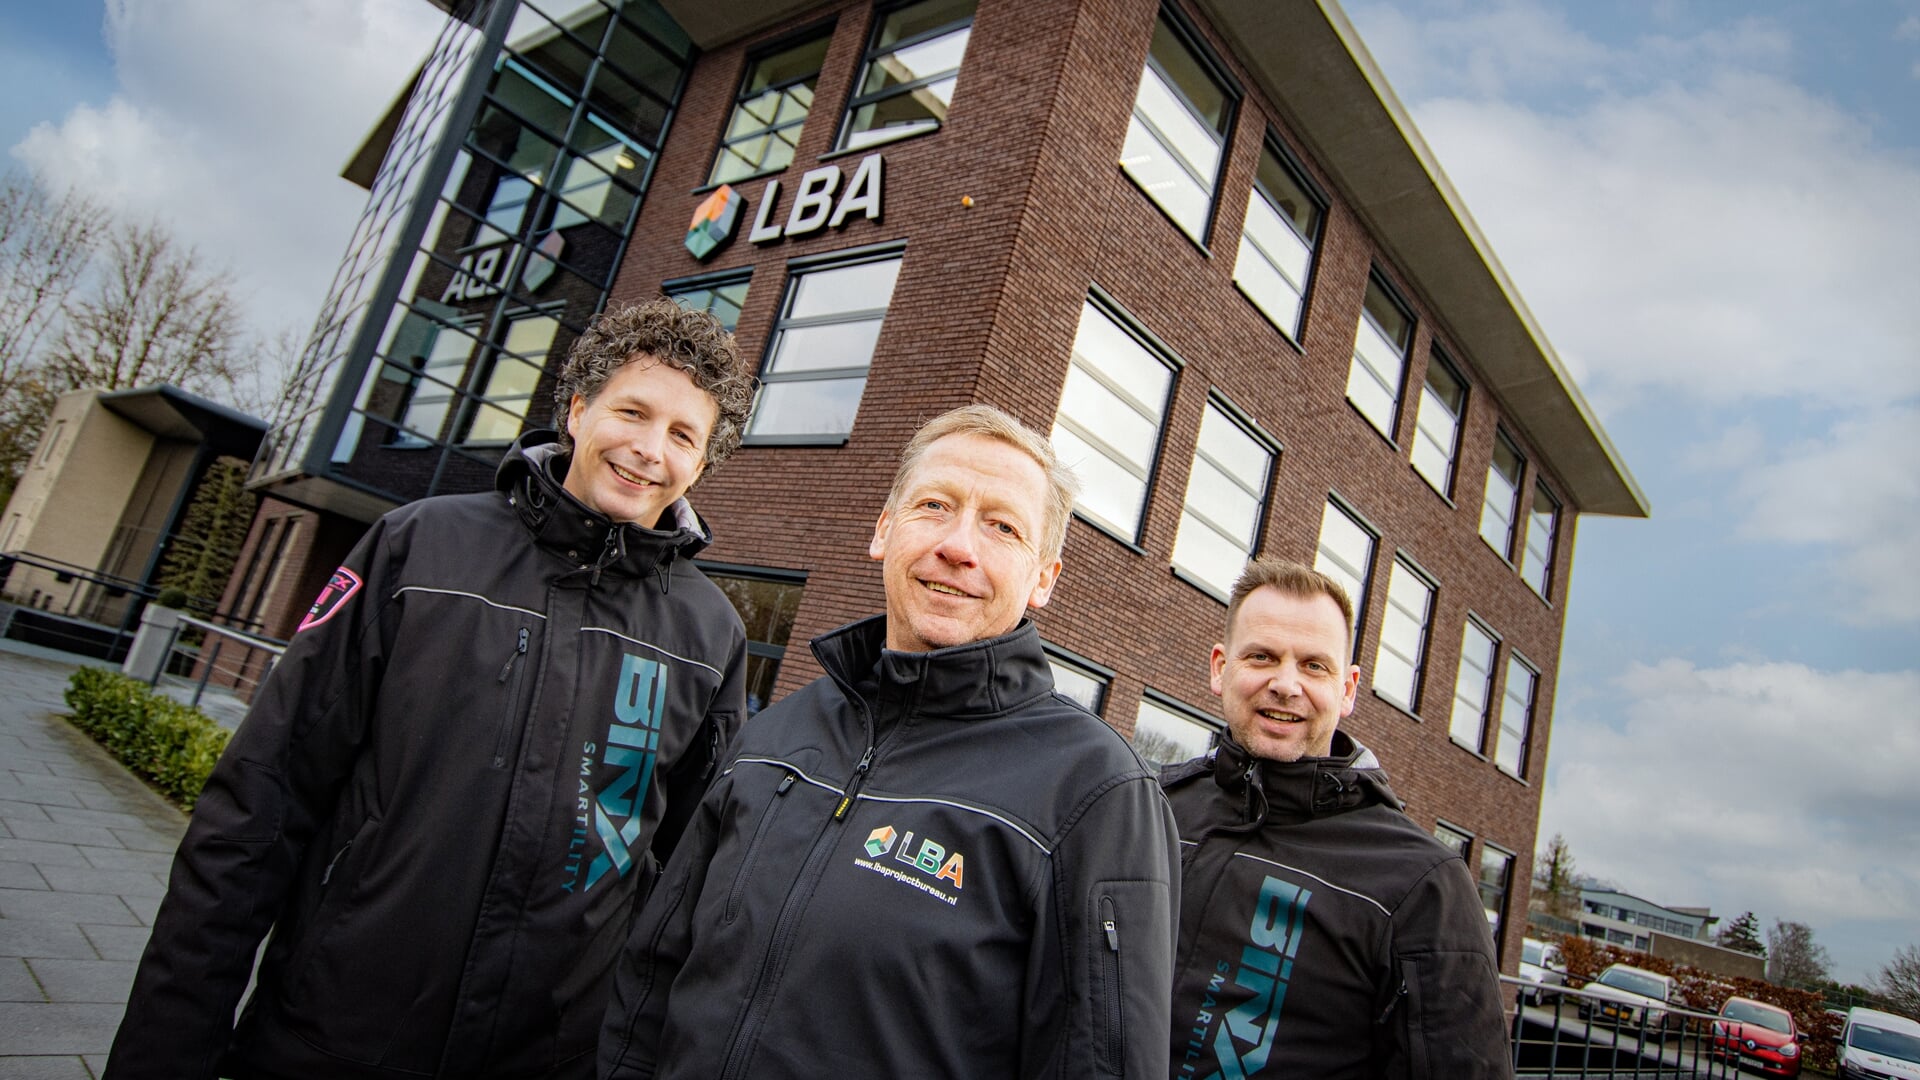 De drie nieuwe eigenaren van LBA (vlnr): Bas Hommelink, Erik Schuurmans en Bart Wopereis. Foto: PR